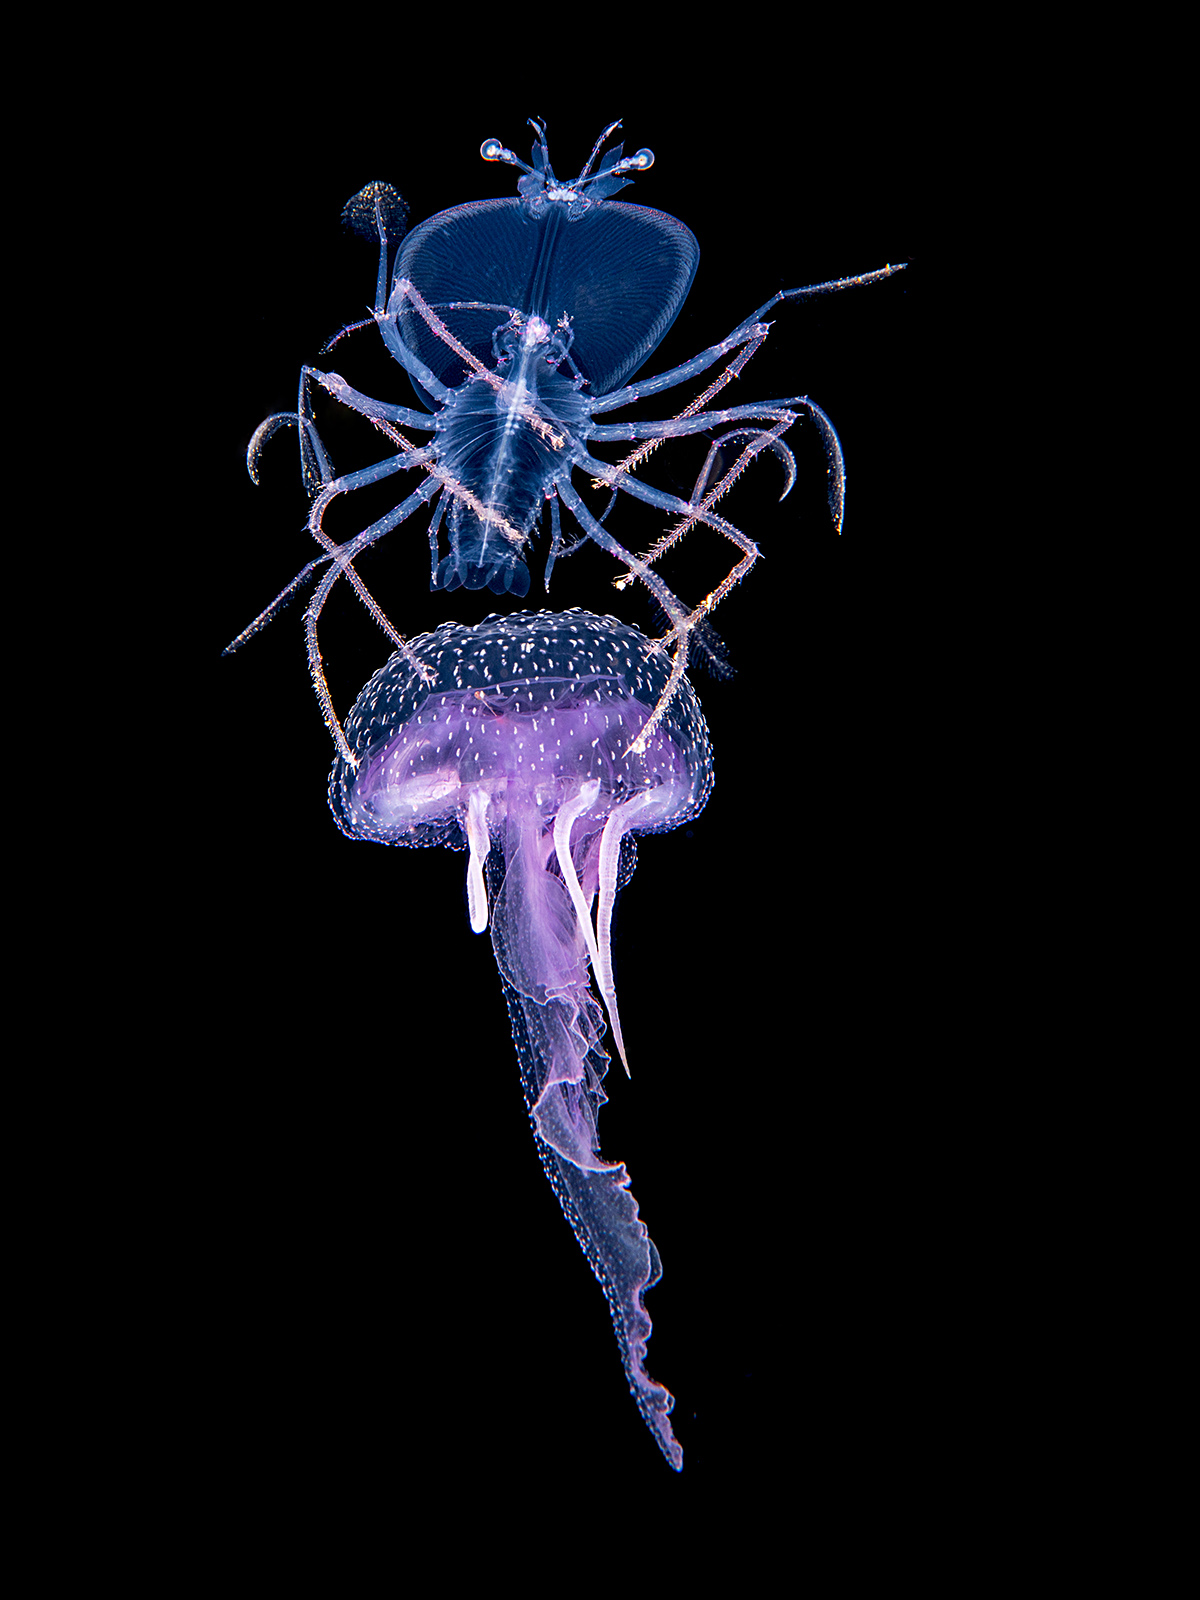 Larve de crustacé, phyllosome, installée sur une méduse Pelagia noctiluca. La larve pourrait se nourrir de la méduse et utiliser cette dernière pour économiser ses mouvements. La méduse servirait en quelque sorte de taxi à la larve de langouste. Crédit : Fabien Michenet et Anthony Berberian